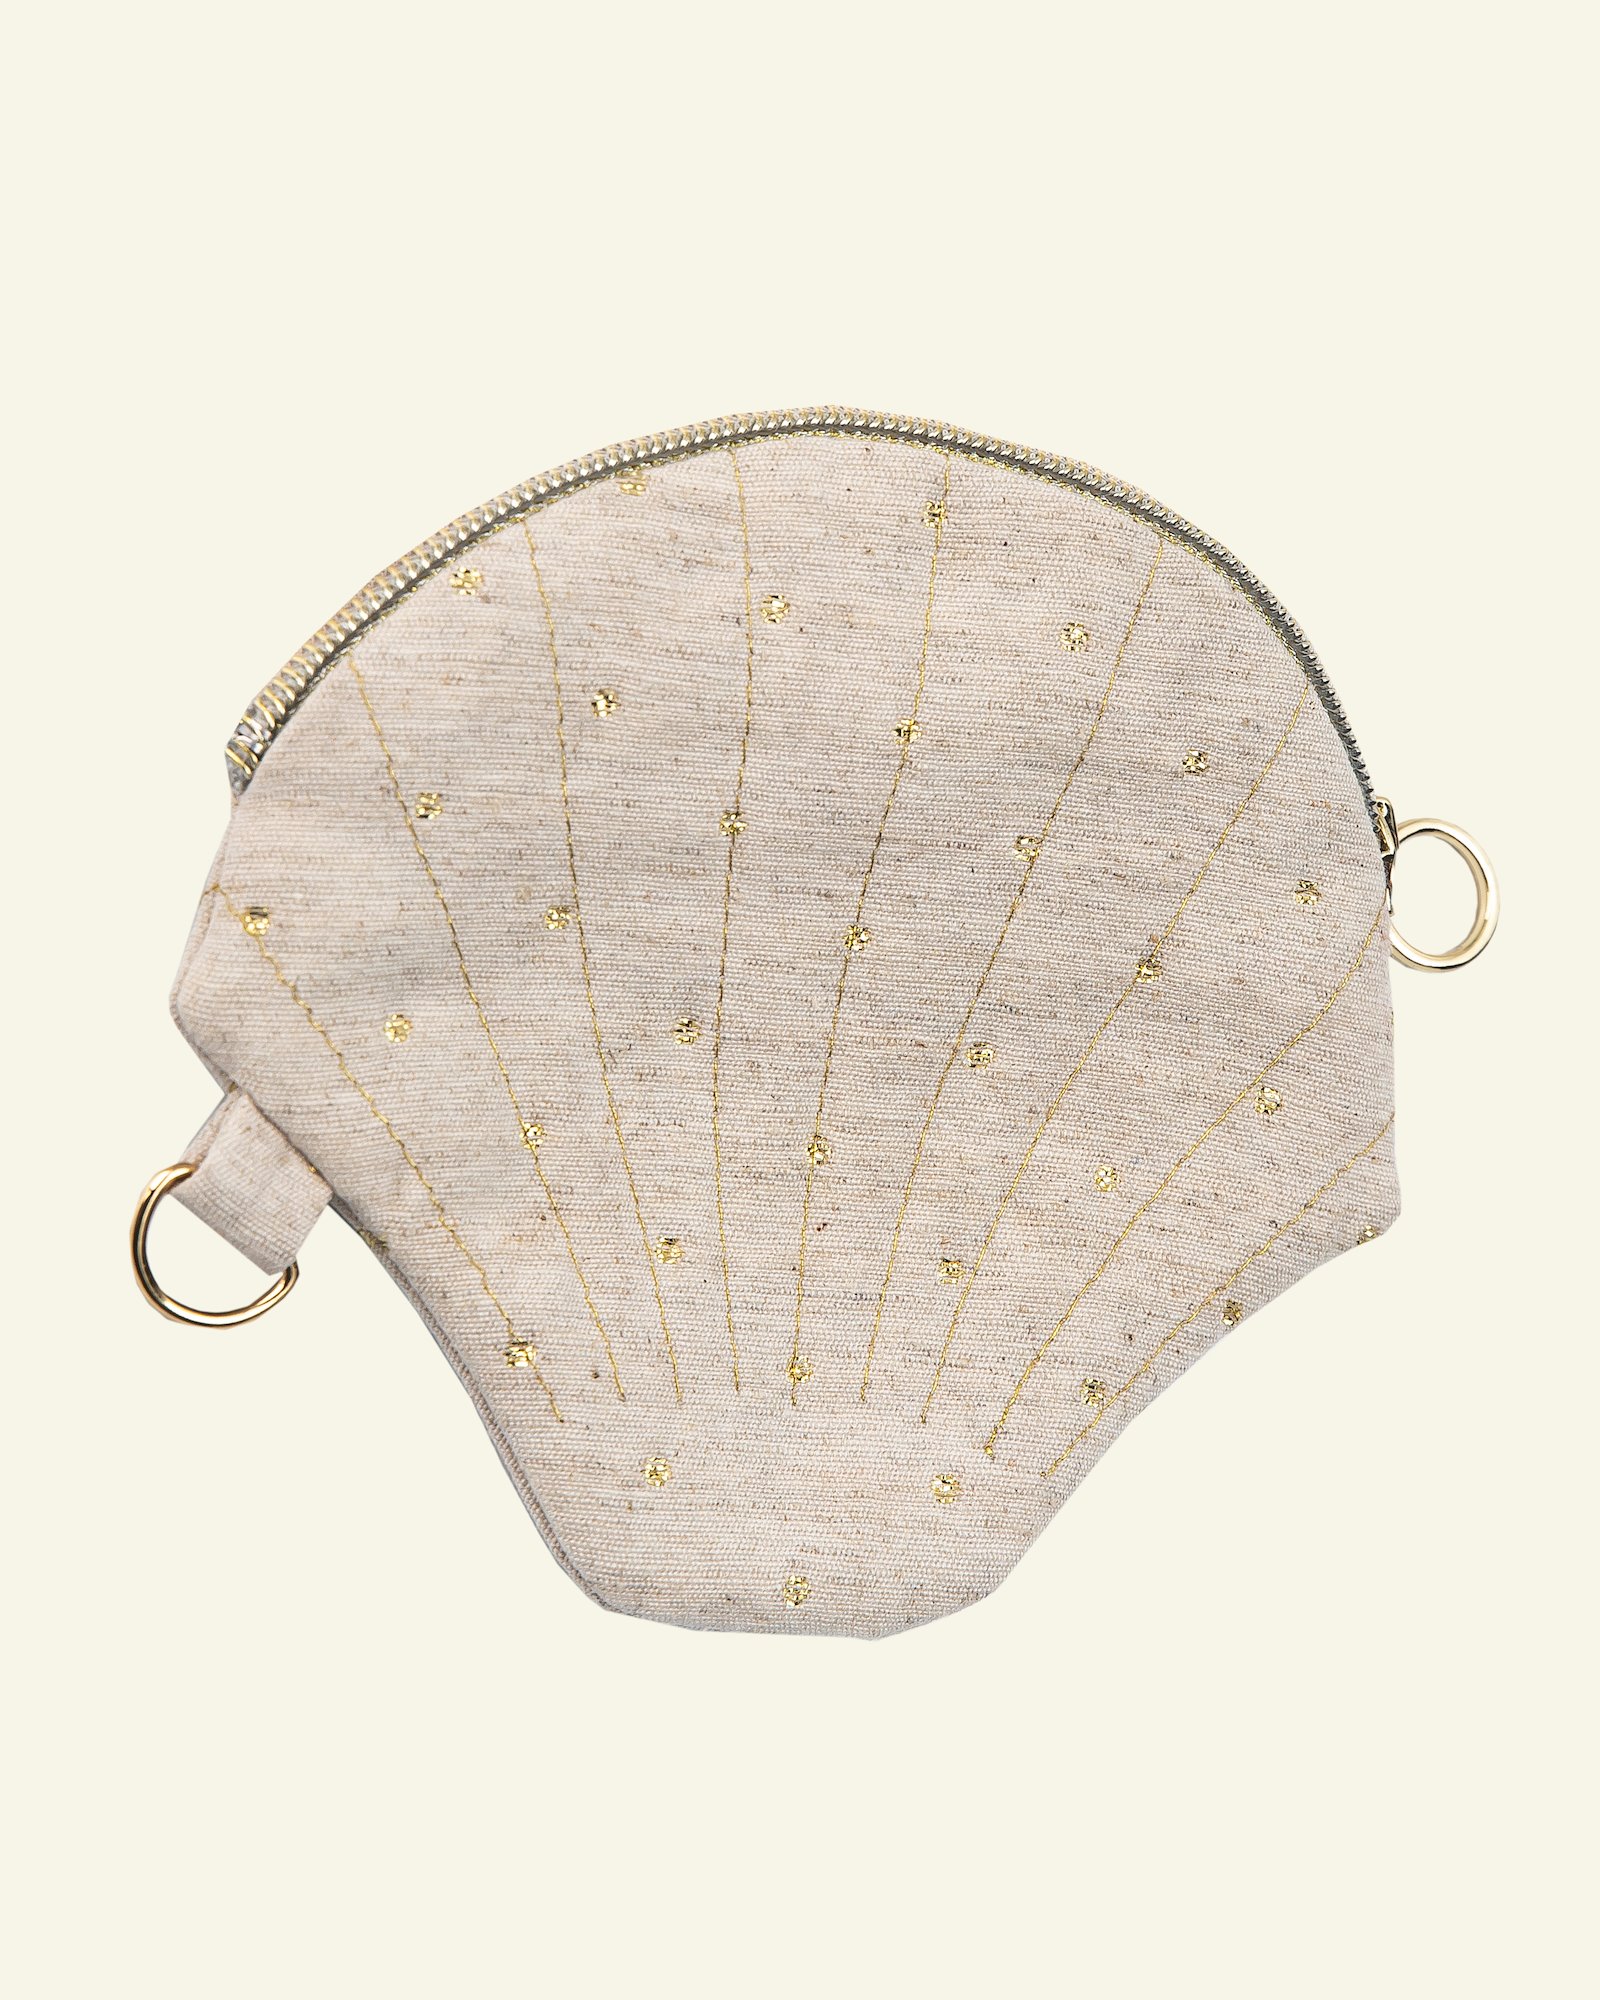 Seashell bag DIY7010_seashell_bag_sew.png